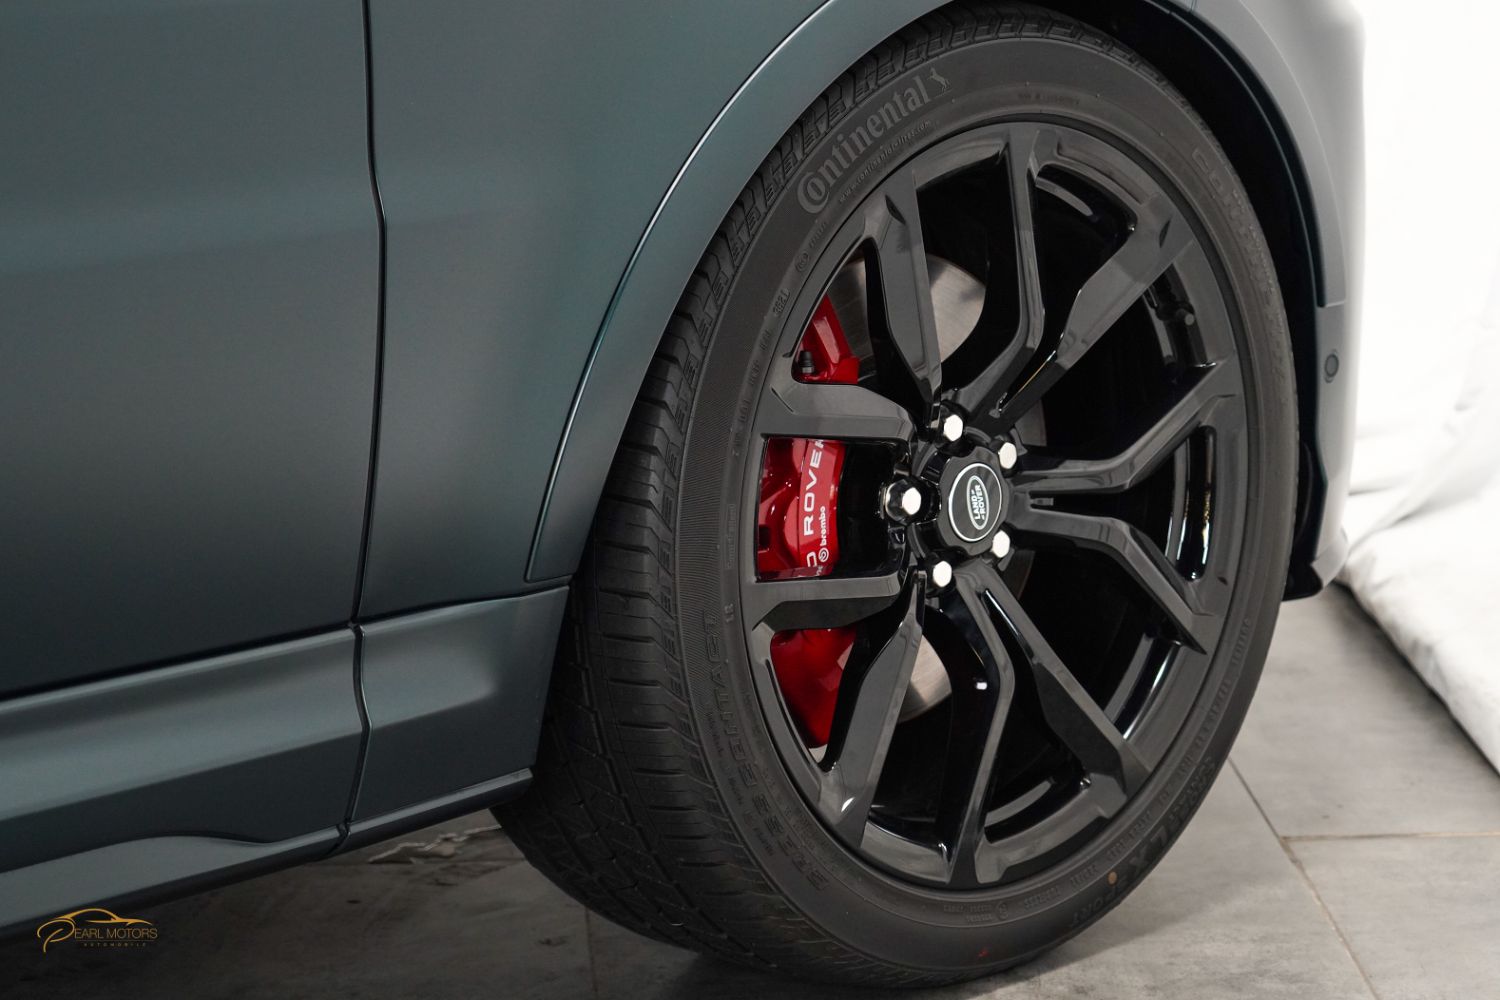 Range Rover SVR - Carbon fiber edition